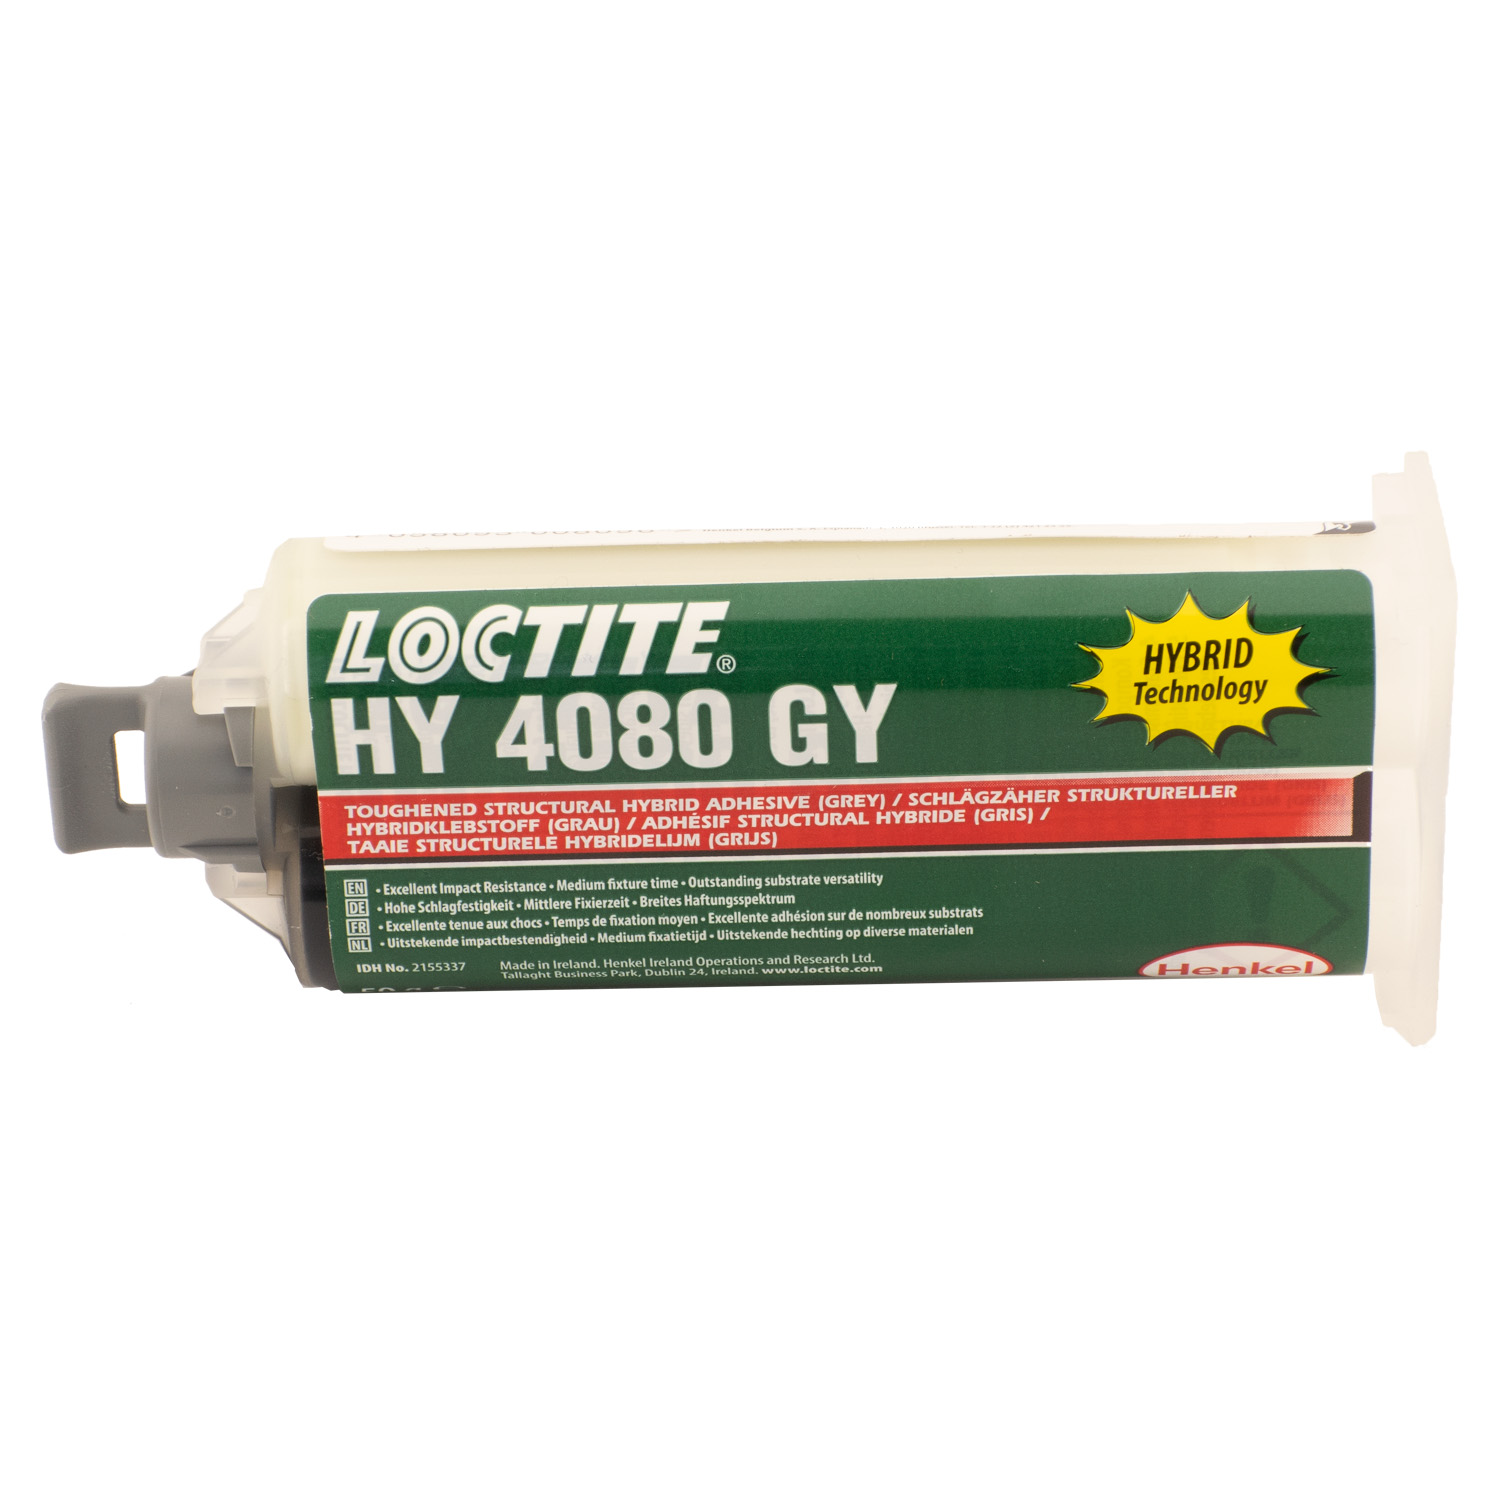 Вибростойкий ударнопрочный клей, прозрачный Локтайт  Loctite HY 4080 CR, 50г